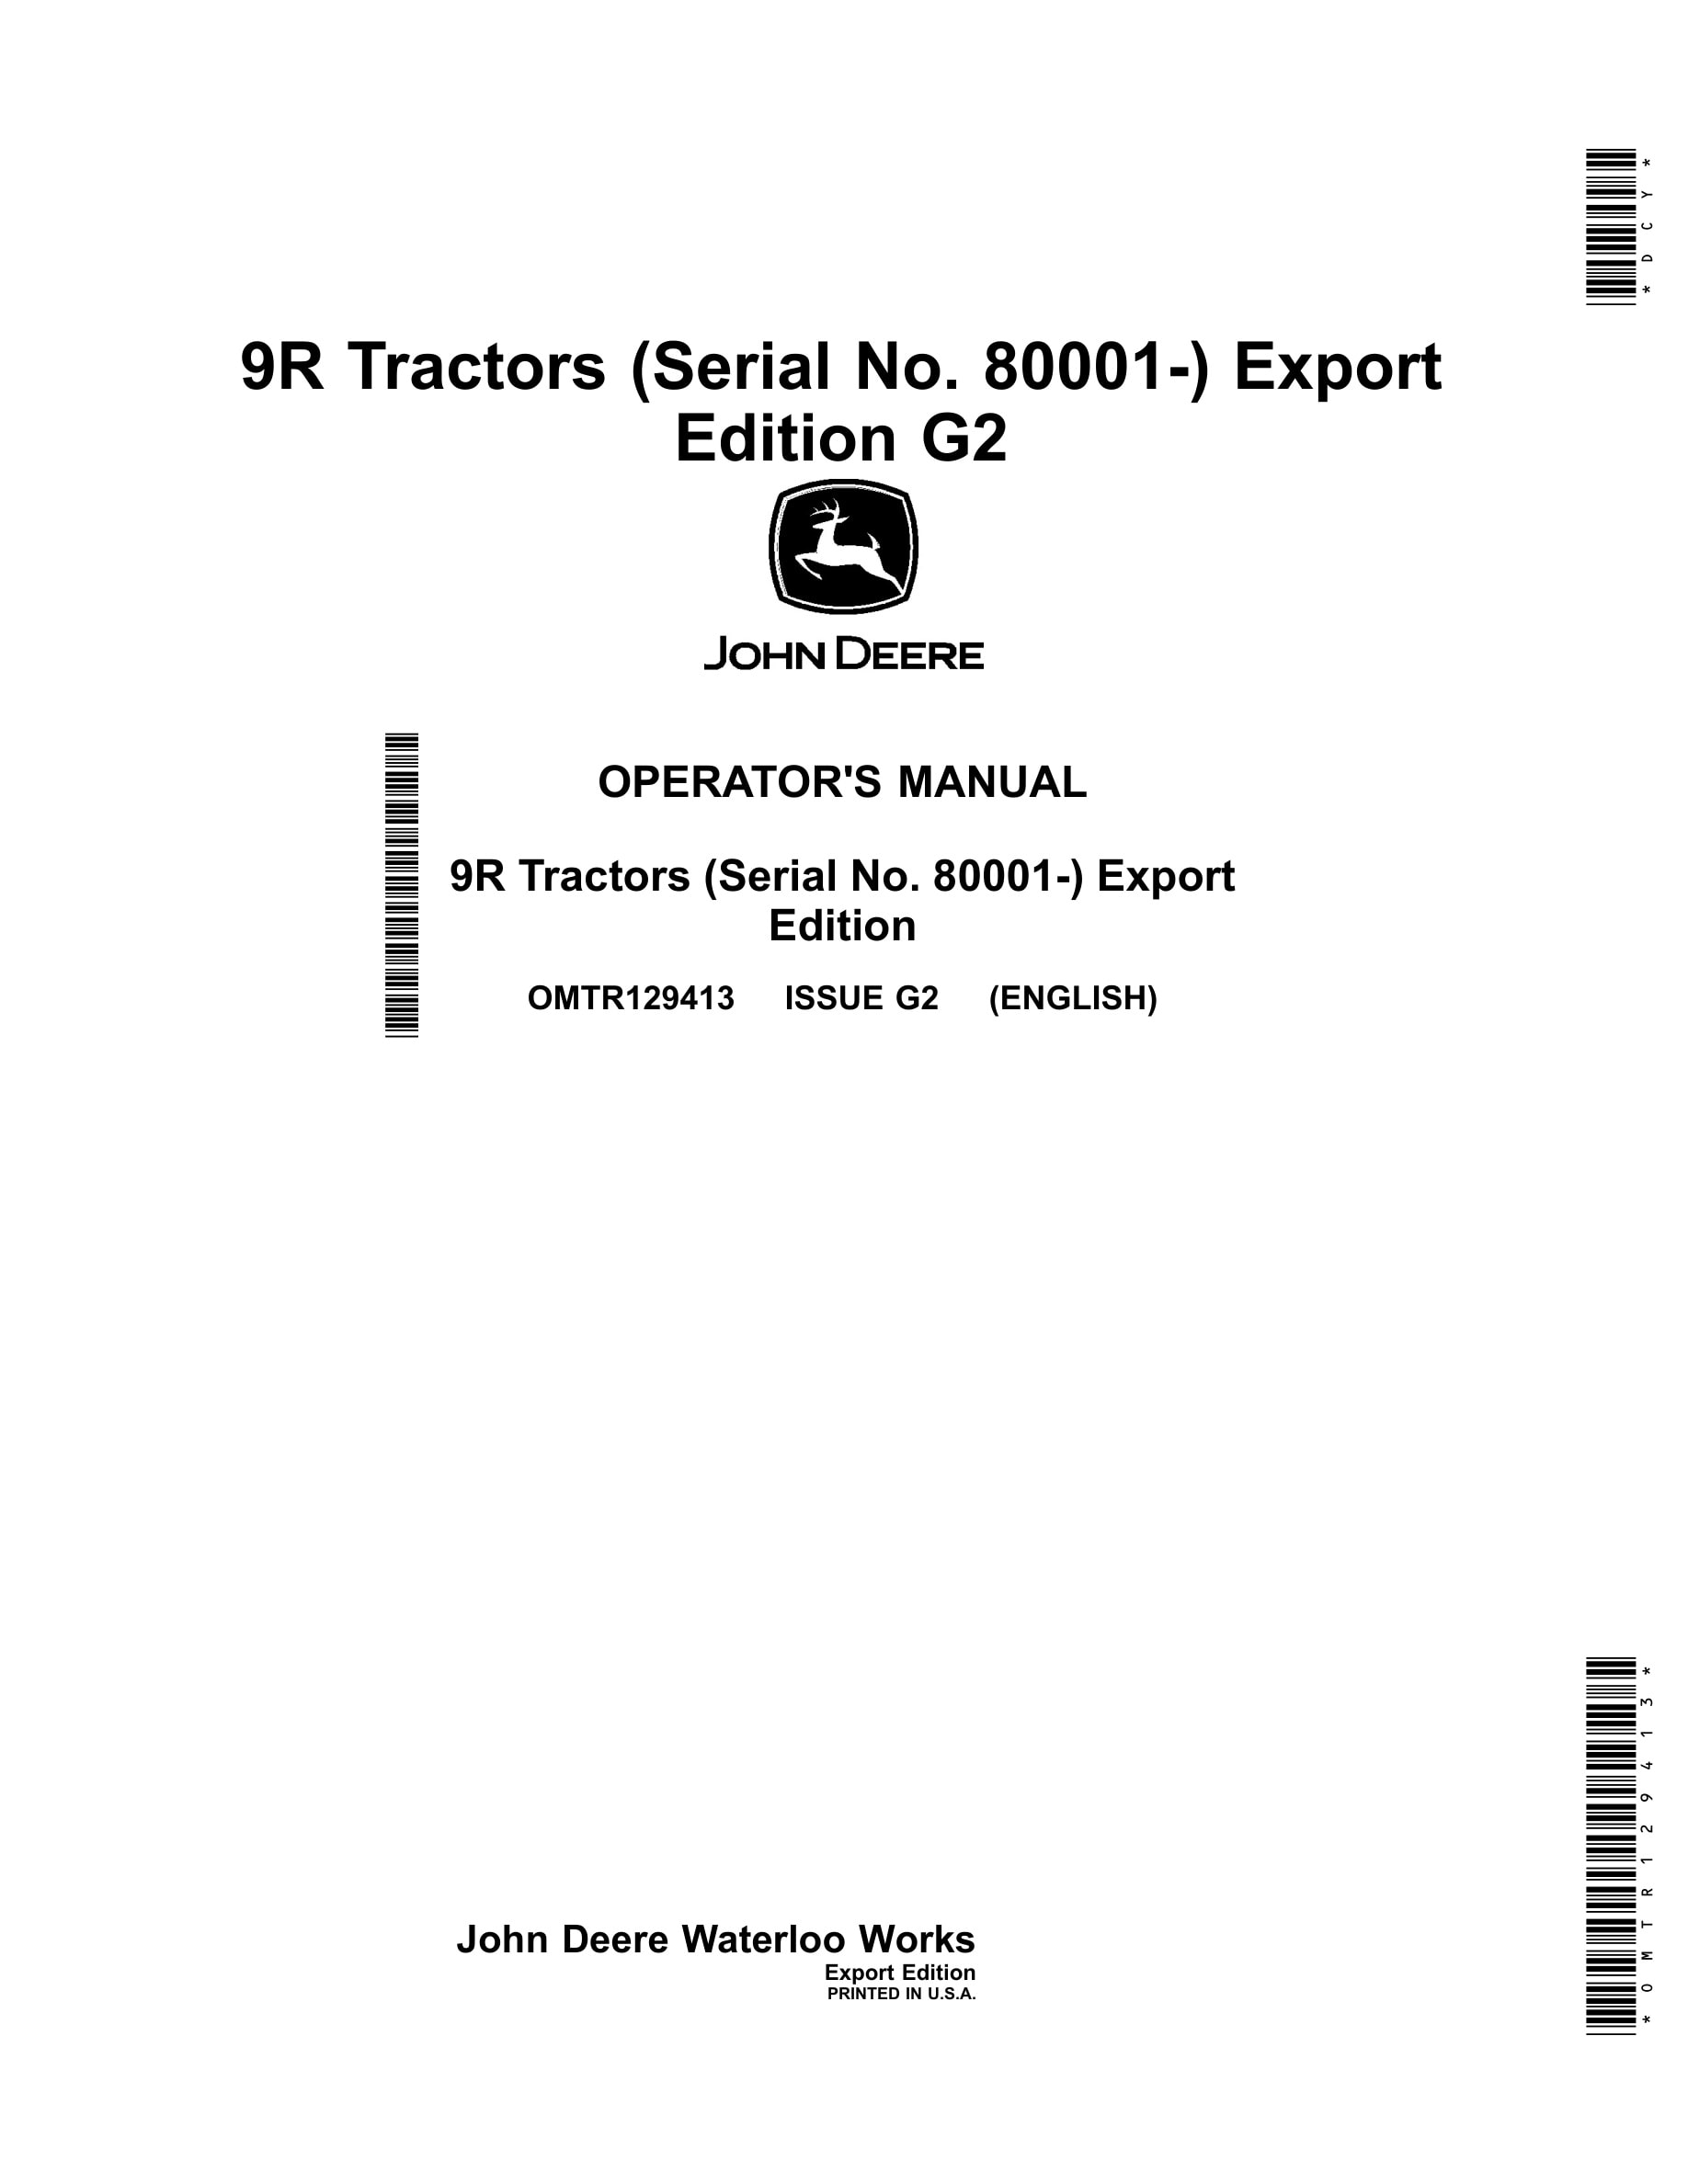 John Deere 9r Tractors Operator Manuals OMTR129413-1